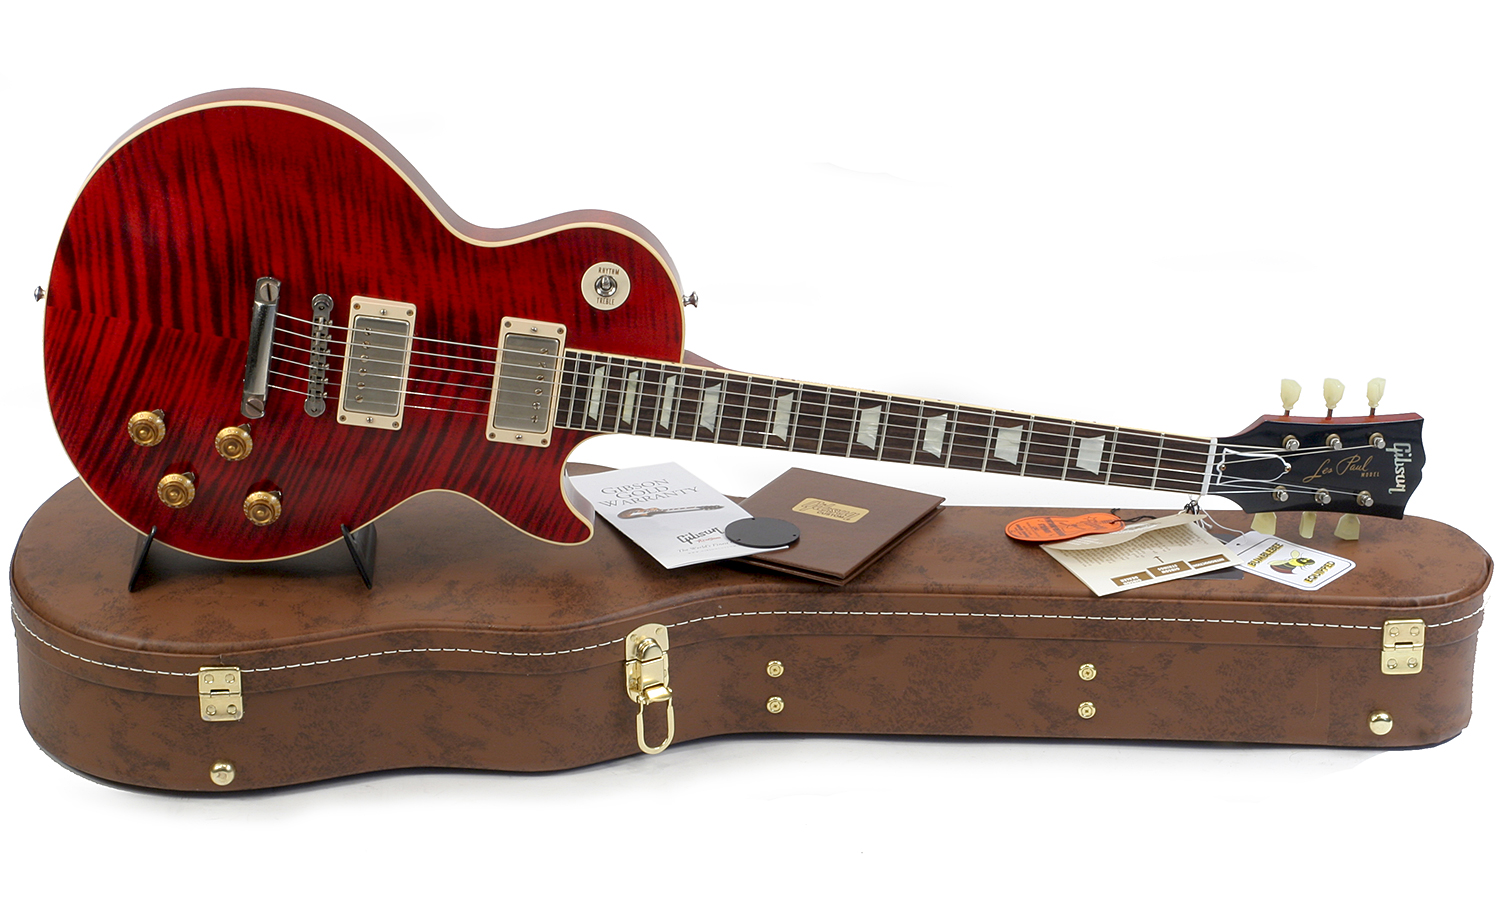 Gibson Custom Shop M2m Les Paul Standard 1959 Reissue 2h Ht Rw #943147 - Vos Red Tiger - Enkel gesneden elektrische gitaar - Variation 1